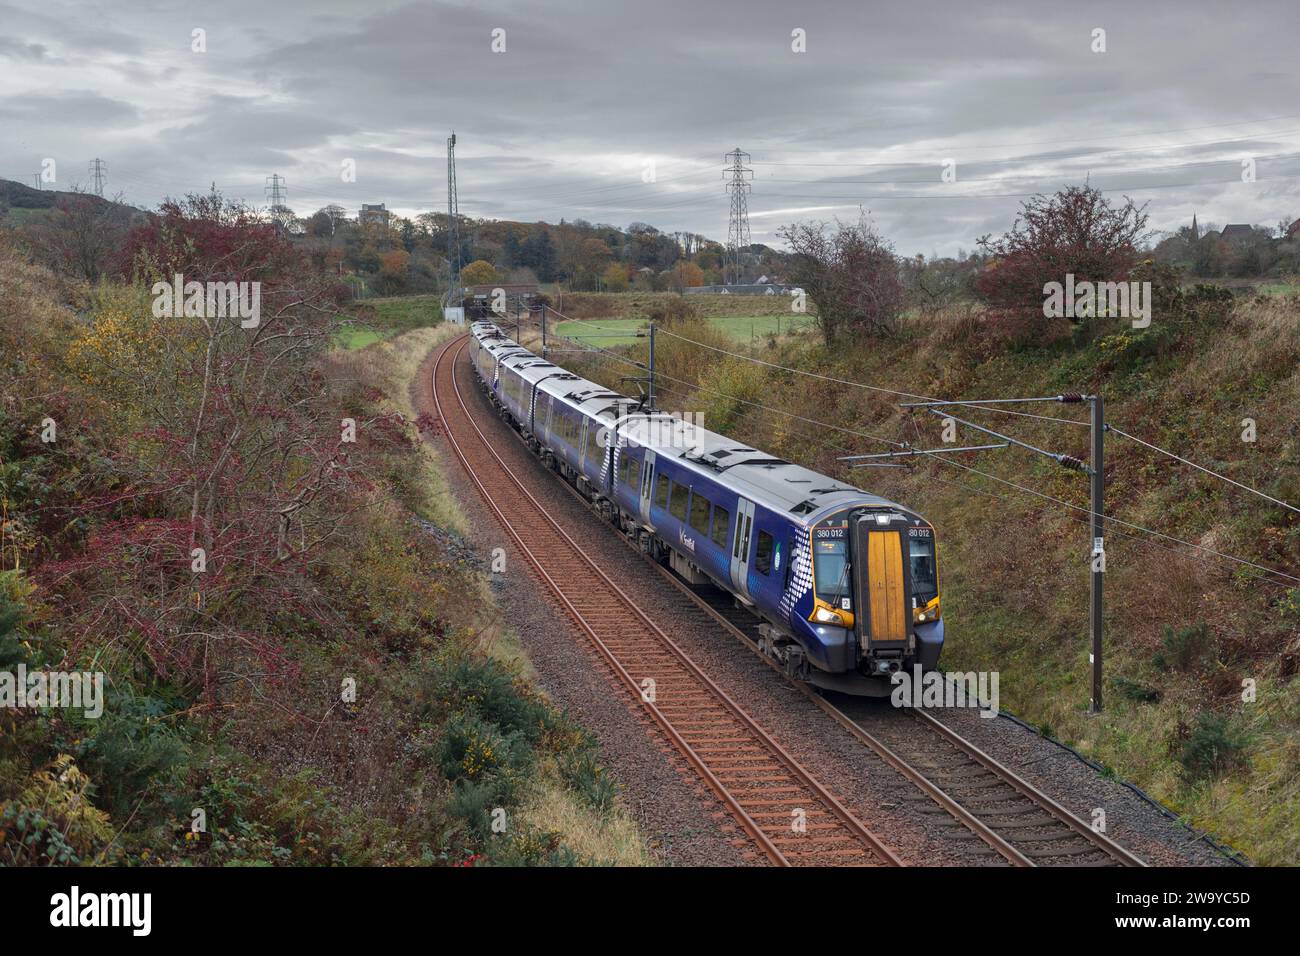 Trains électriques ScotRail de classe 380 passant dans la campagne de l'Ayrshire près de West Kilbride, Écosse, Royaume-Uni Banque D'Images